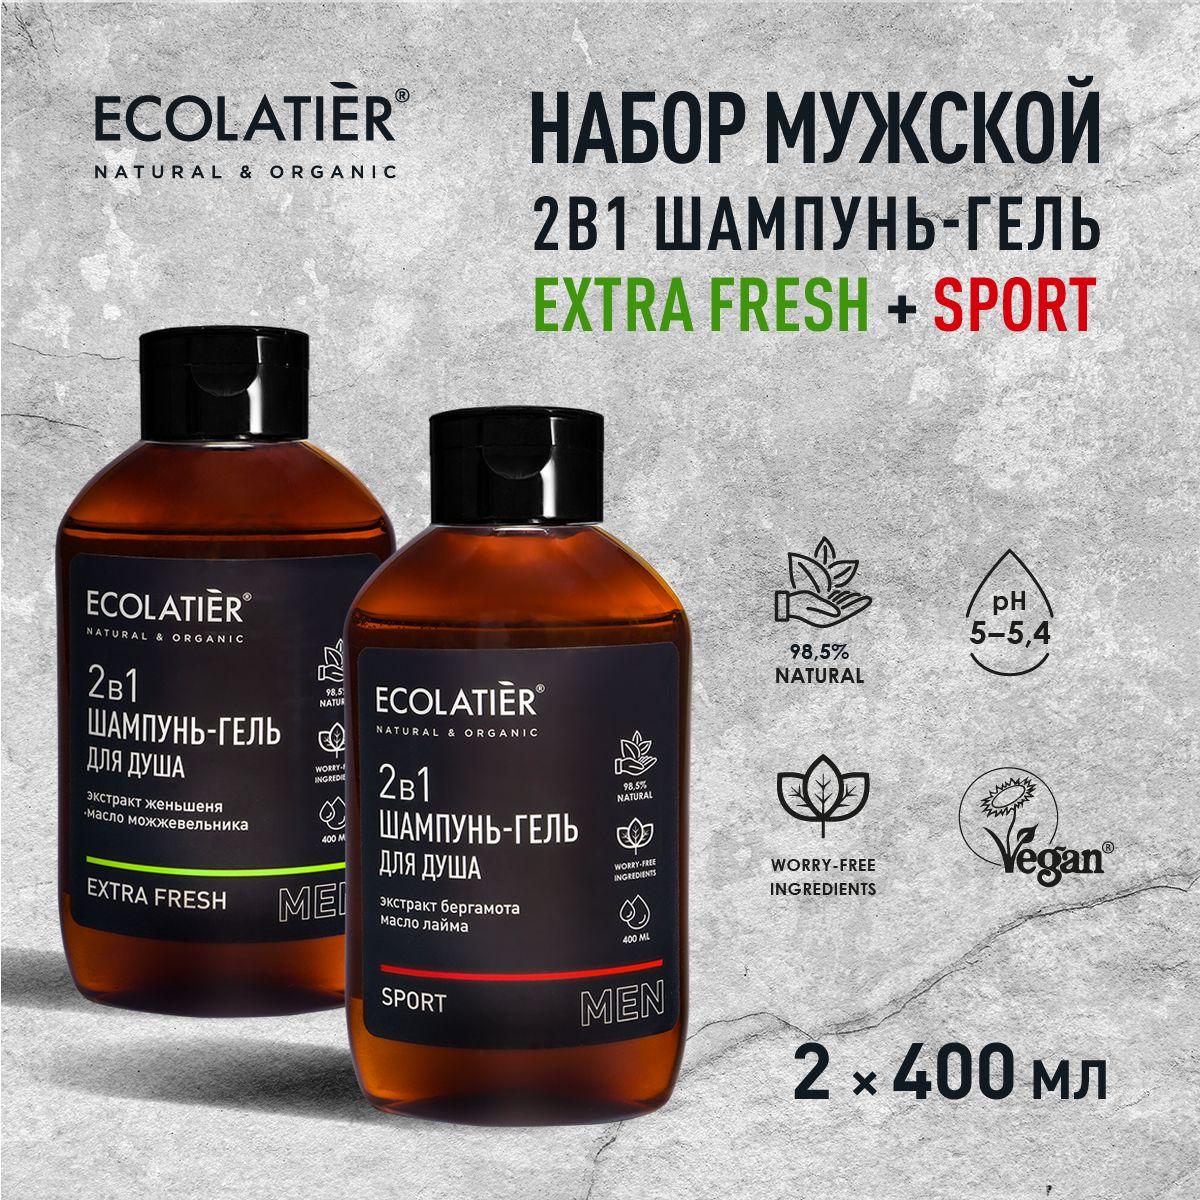 ECOLATIER / Мужской шампунь и гель для душа Extra Fresh 2 в 1 и Sport 2 в 1 / 400 мл, 2 шт.